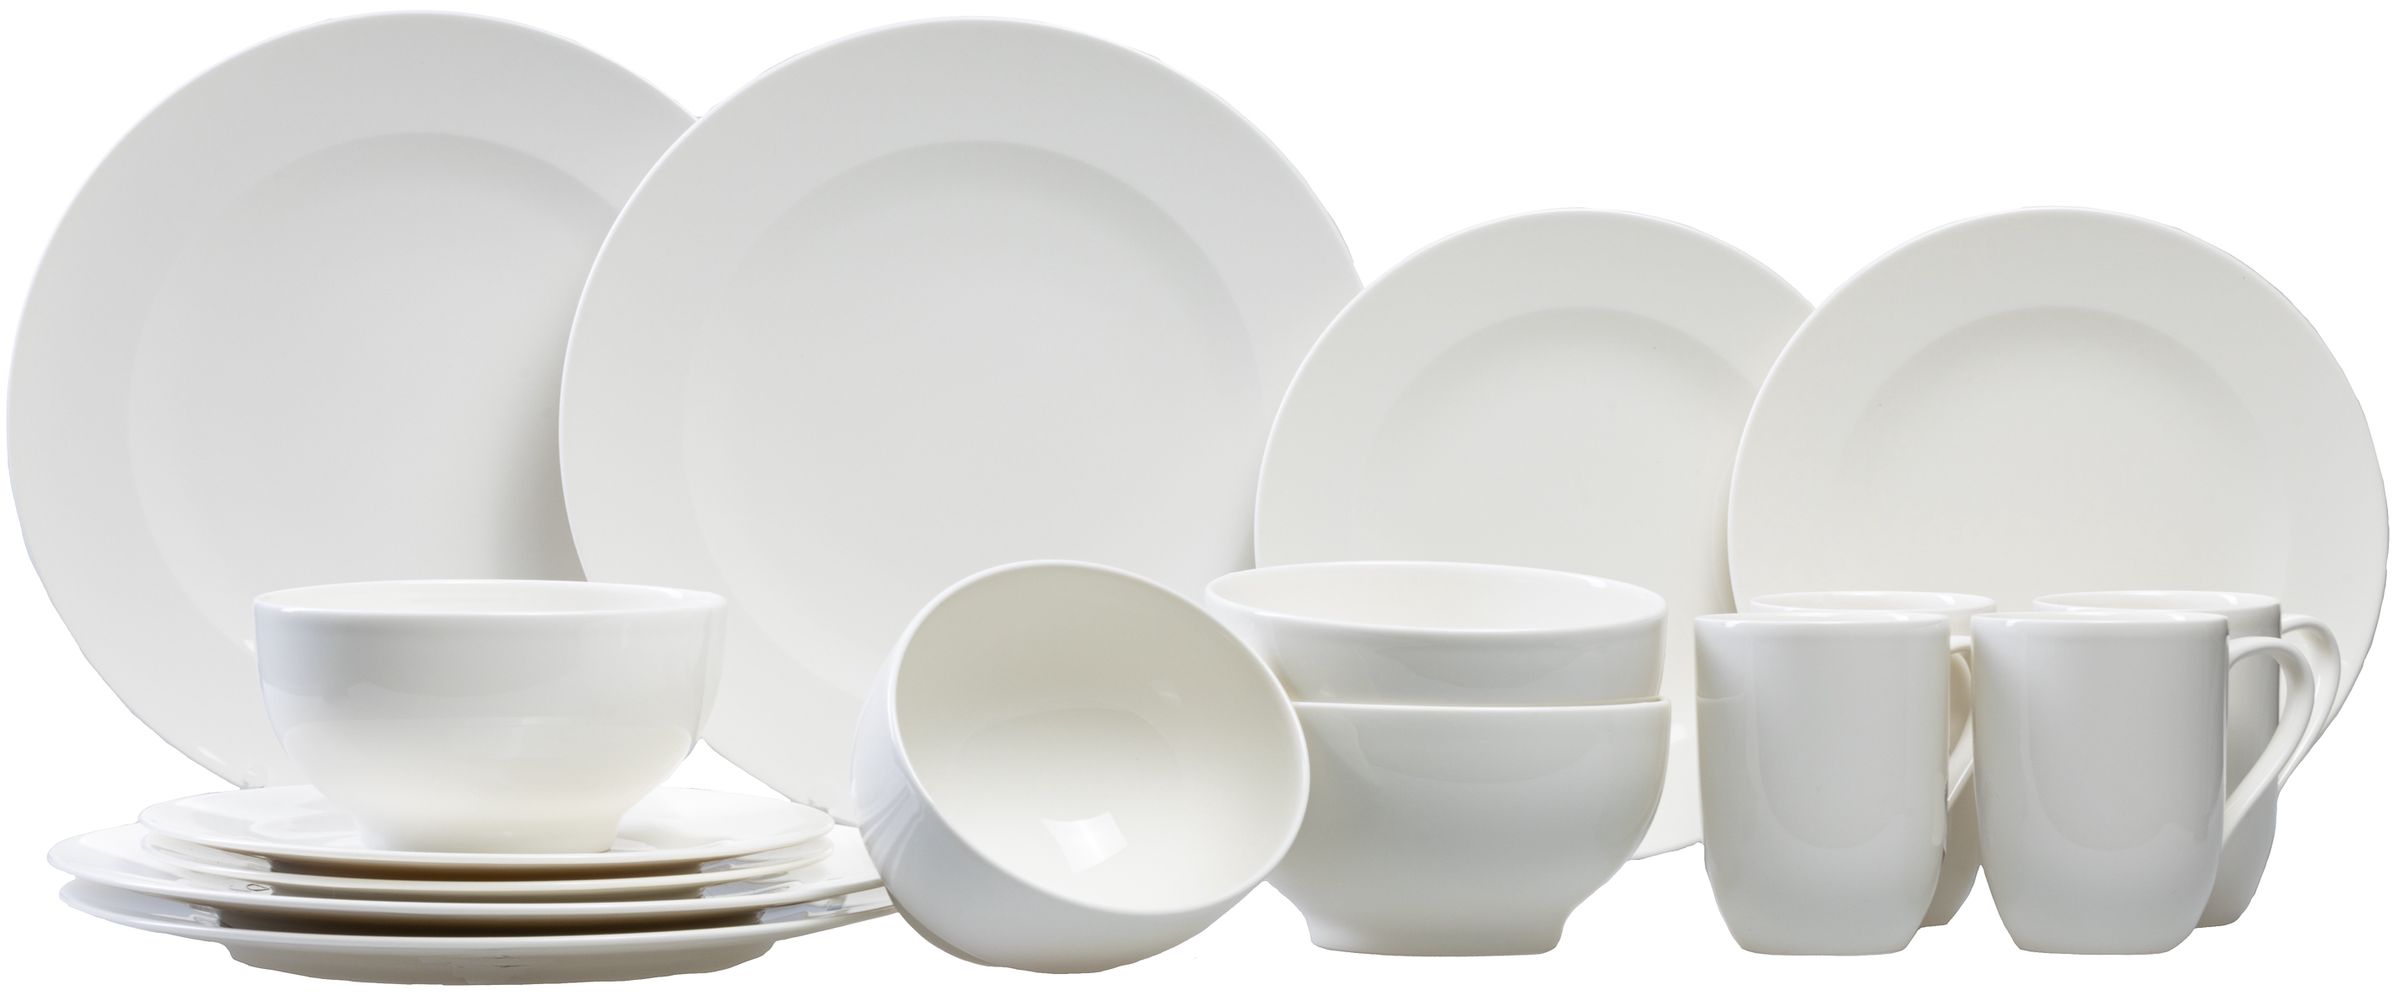 Premium Porcelain Villeroy & Boch 10-4153-8543 for Me Dinnerware White 